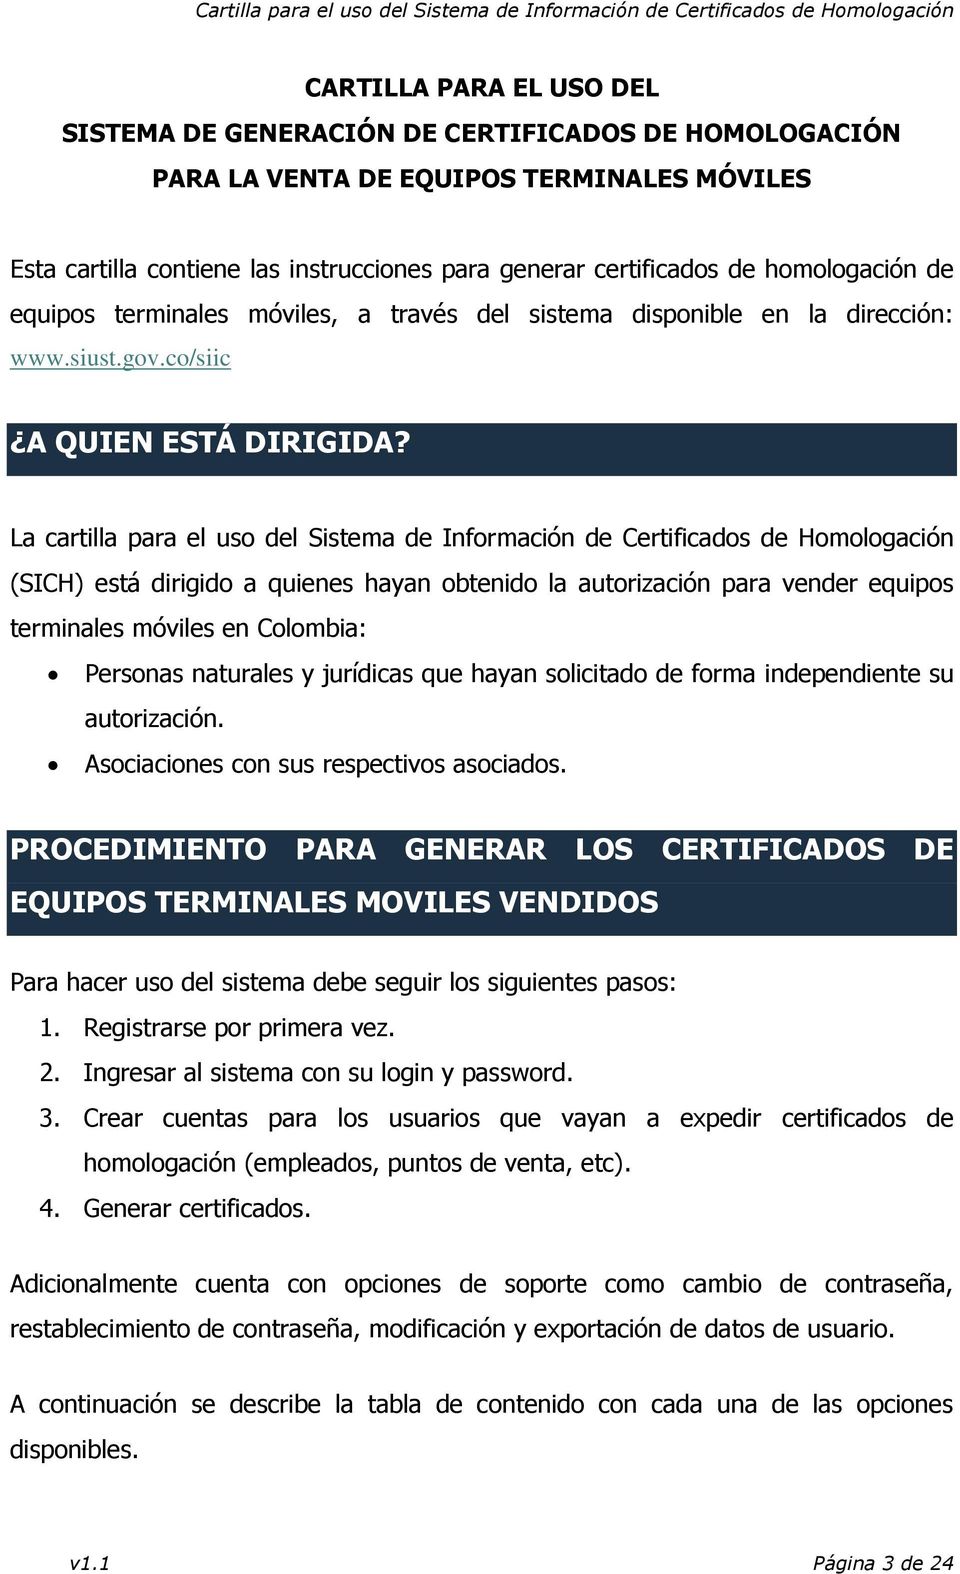 La cartilla para el uso del Sistema de Información de Certificados de Homologación (SICH) está dirigido a quienes hayan obtenido la autorización para vender equipos terminales móviles en Colombia: